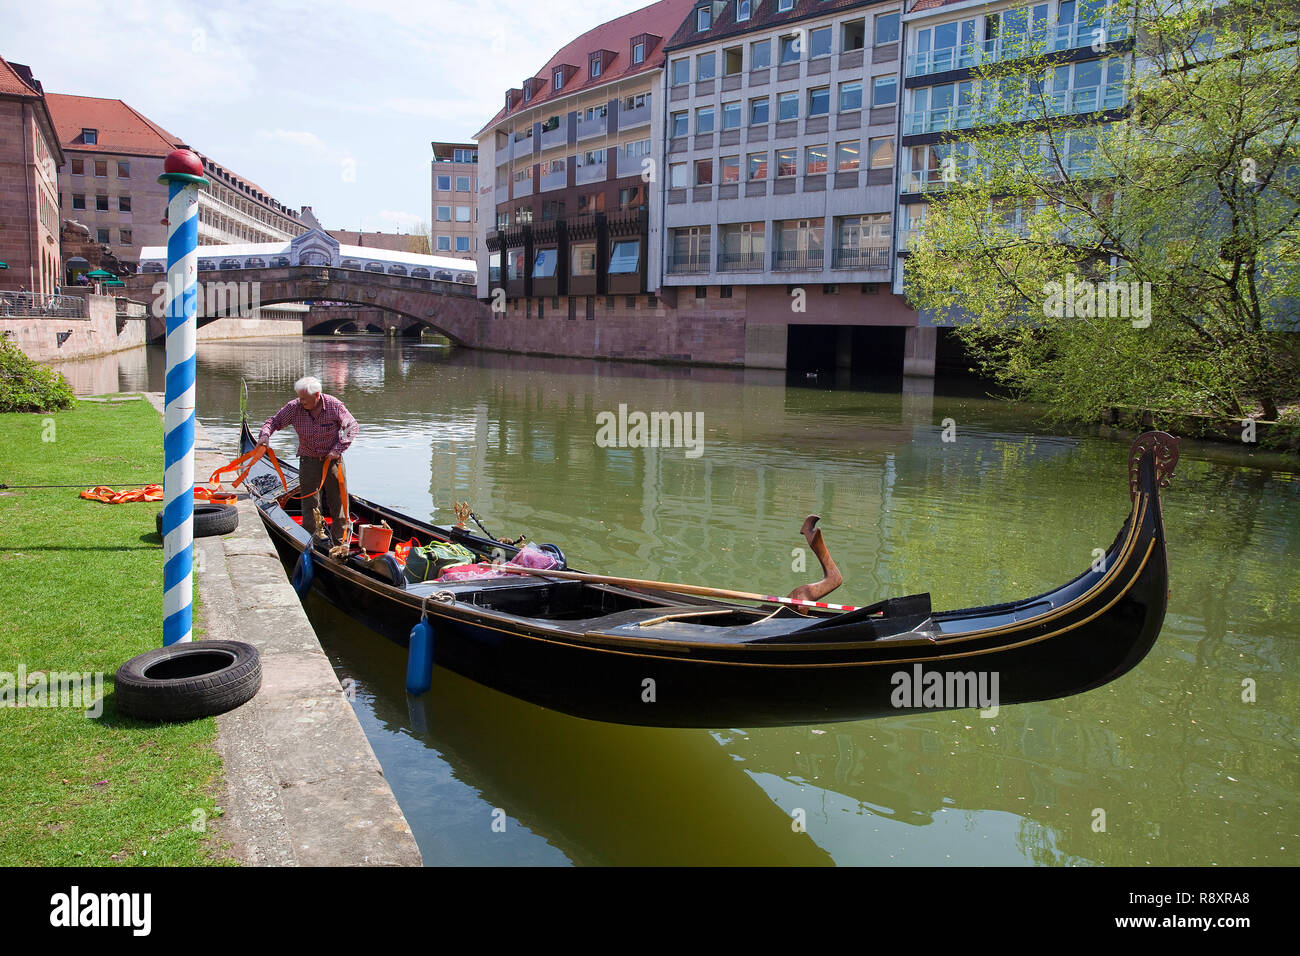 Gondola sur la Pegnitz, pont de la viande, de la vieille ville, Nuremberg, Franconia, Bavaria, Germany, Europe Banque D'Images